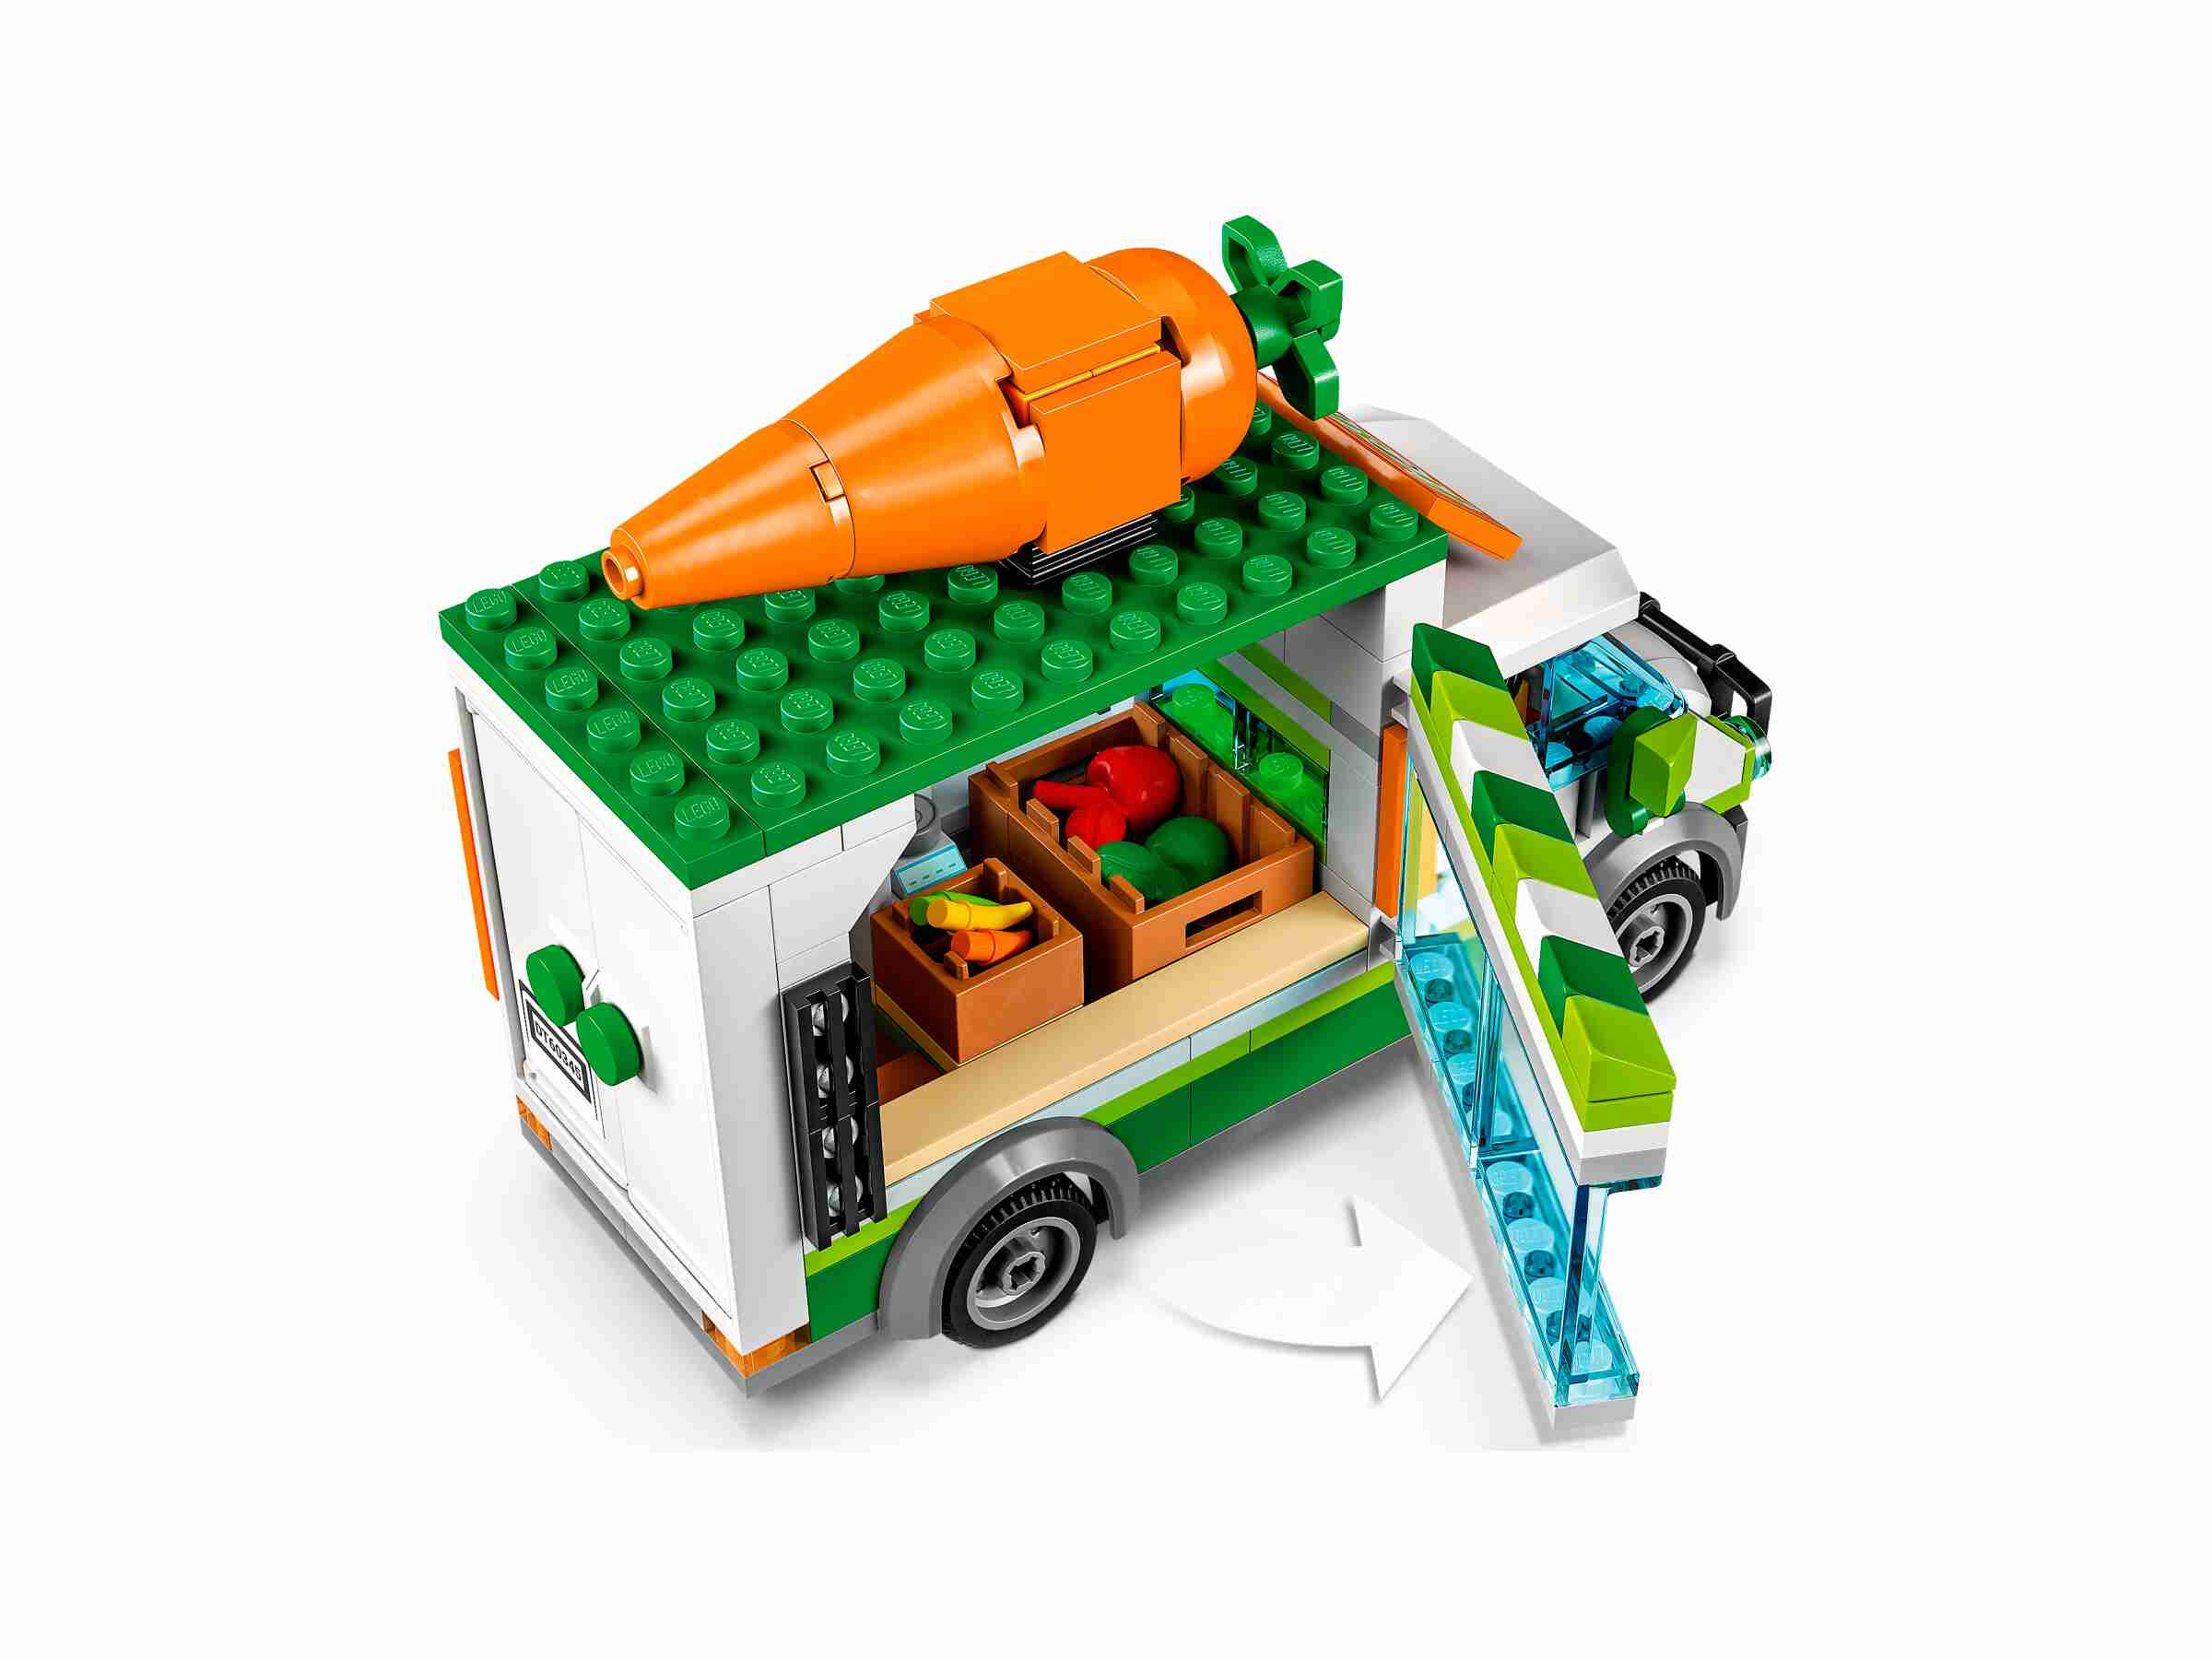 LEGO 60345 City Gemüse-Lieferwagen, 1 Hase und 3 Minifiguren